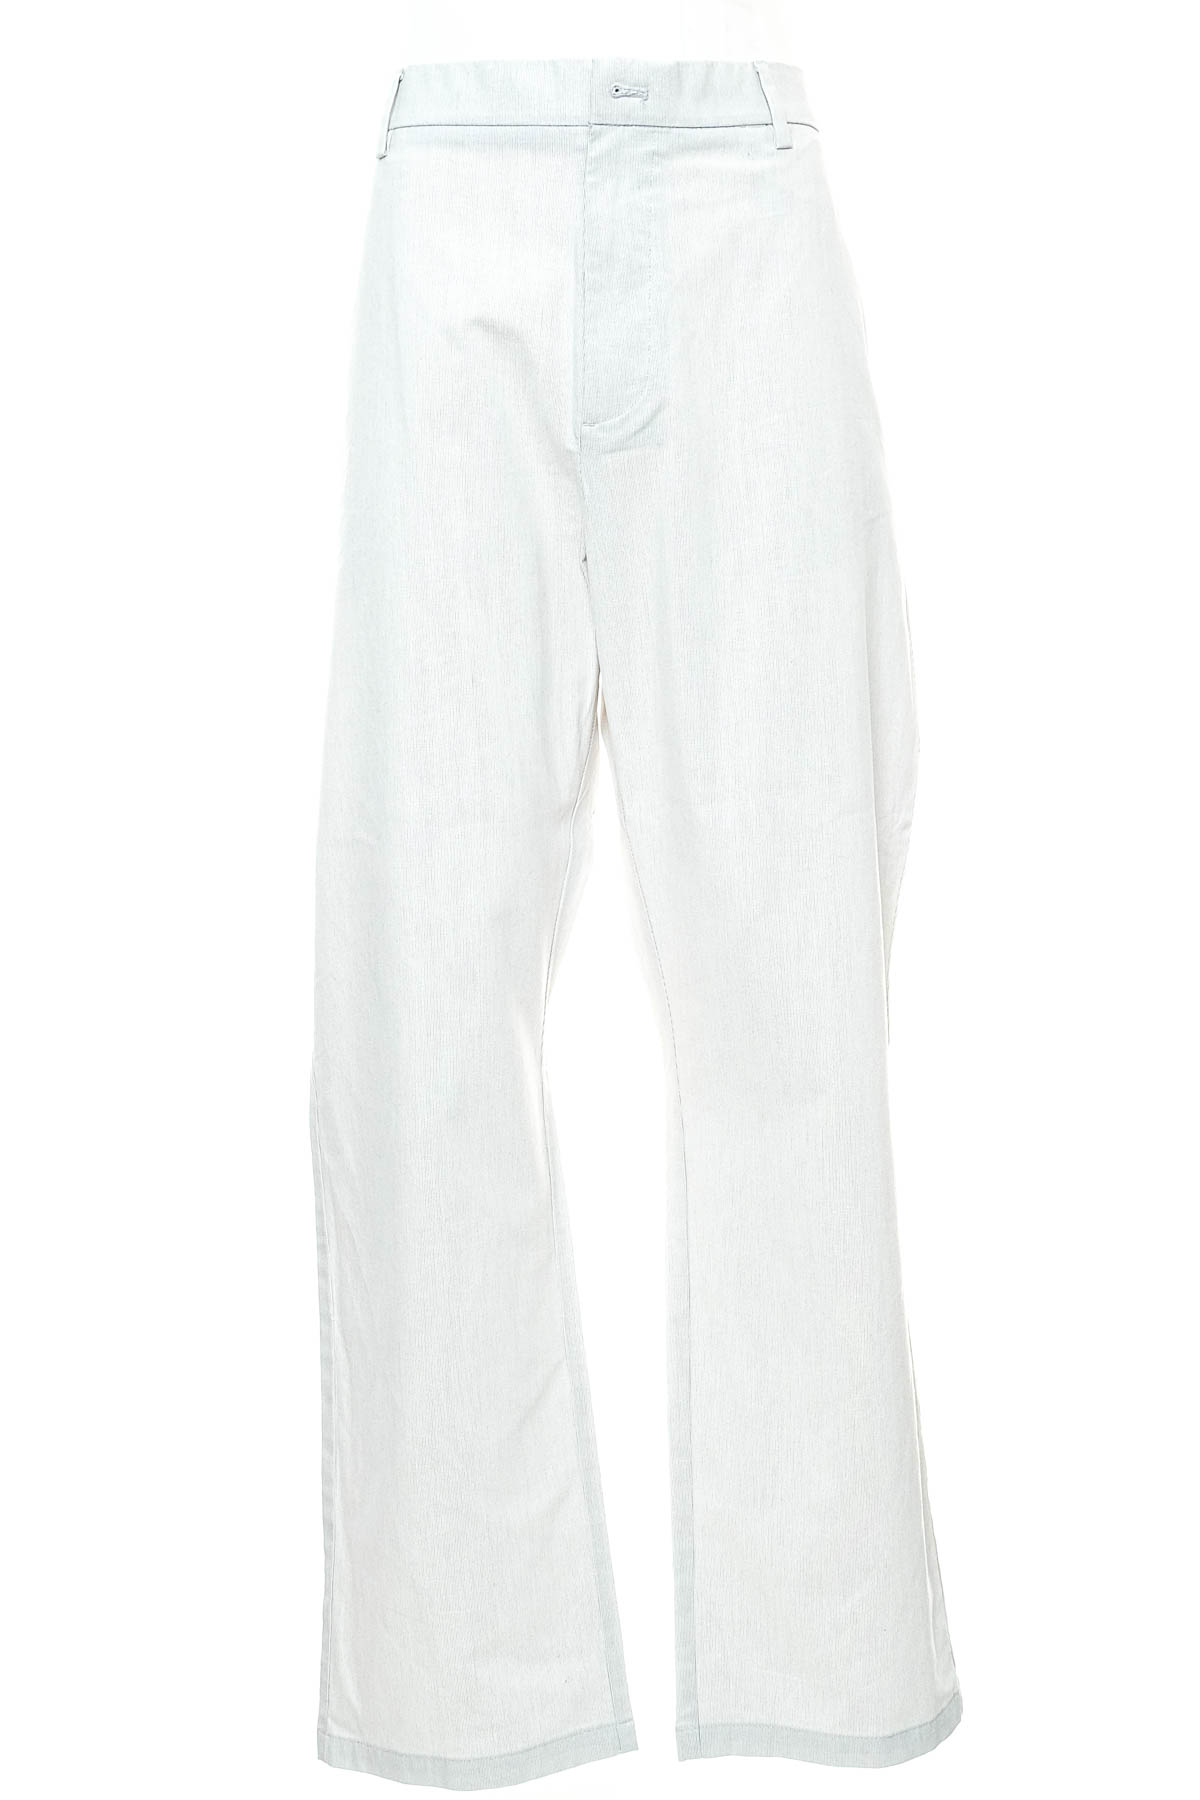 Pantalon pentru bărbați - OLD NAVY - 0